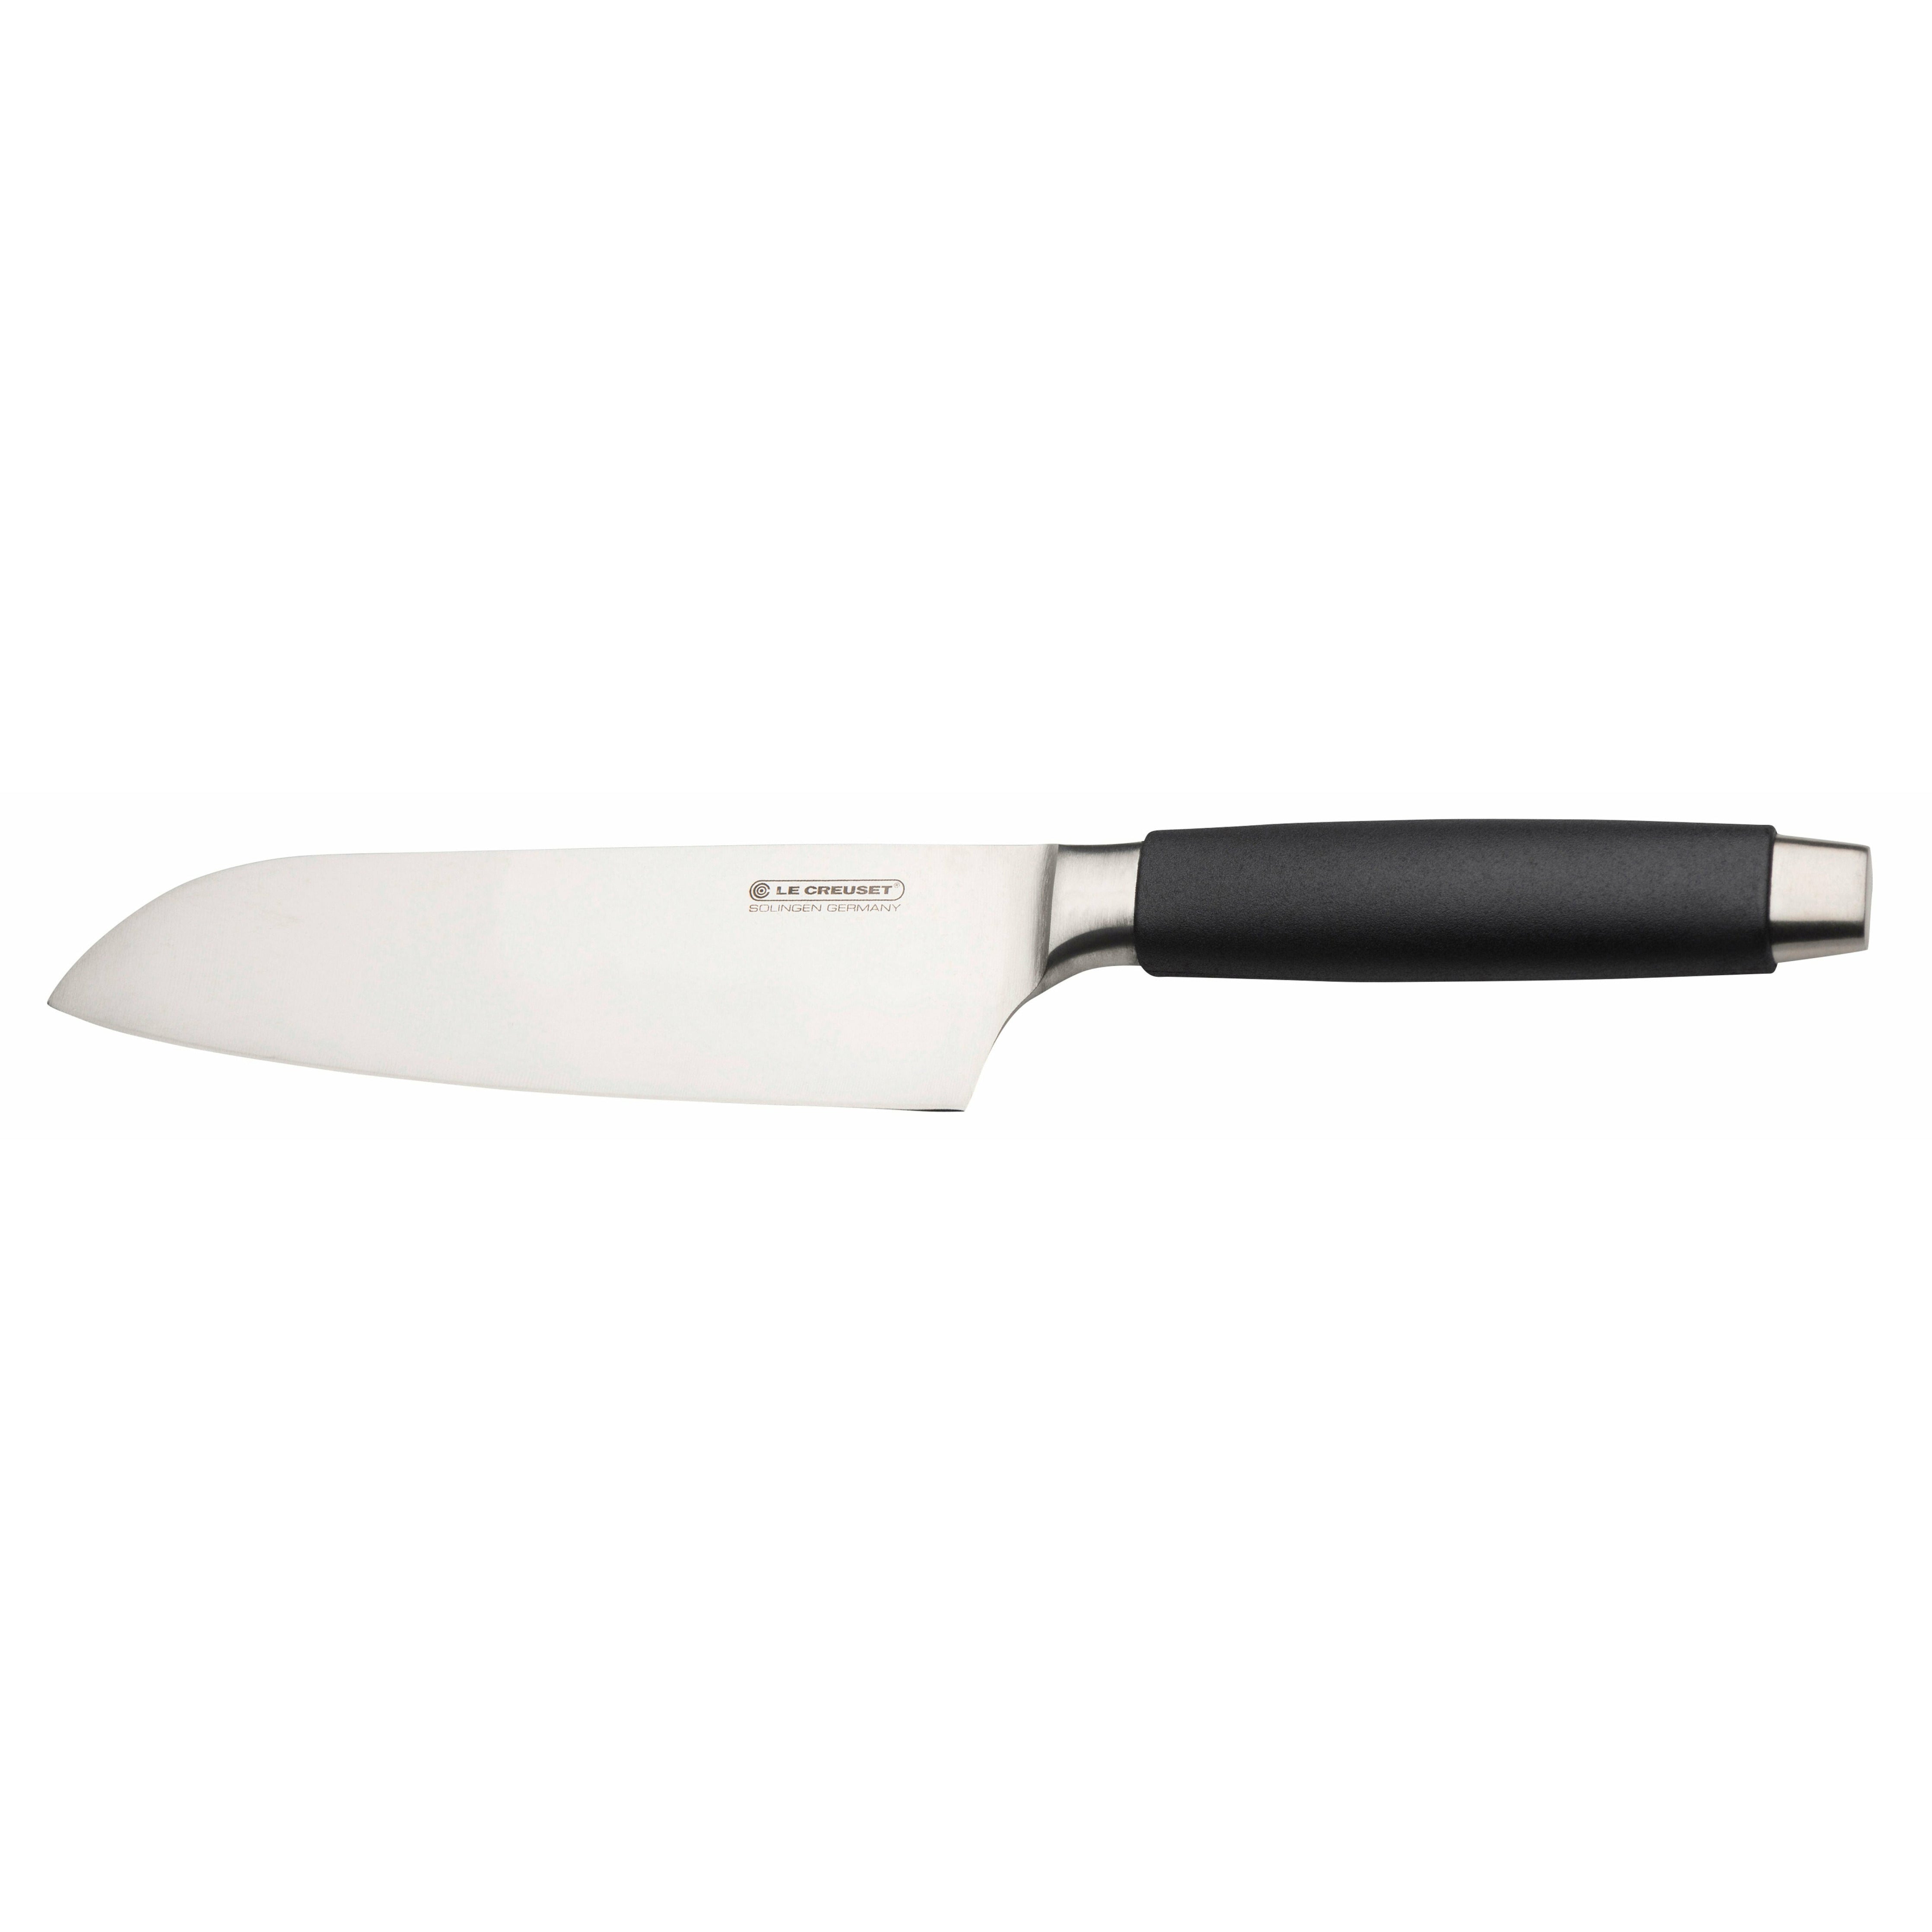 Le Creuset Santoku knivstandard med svart handtag, 18 cm